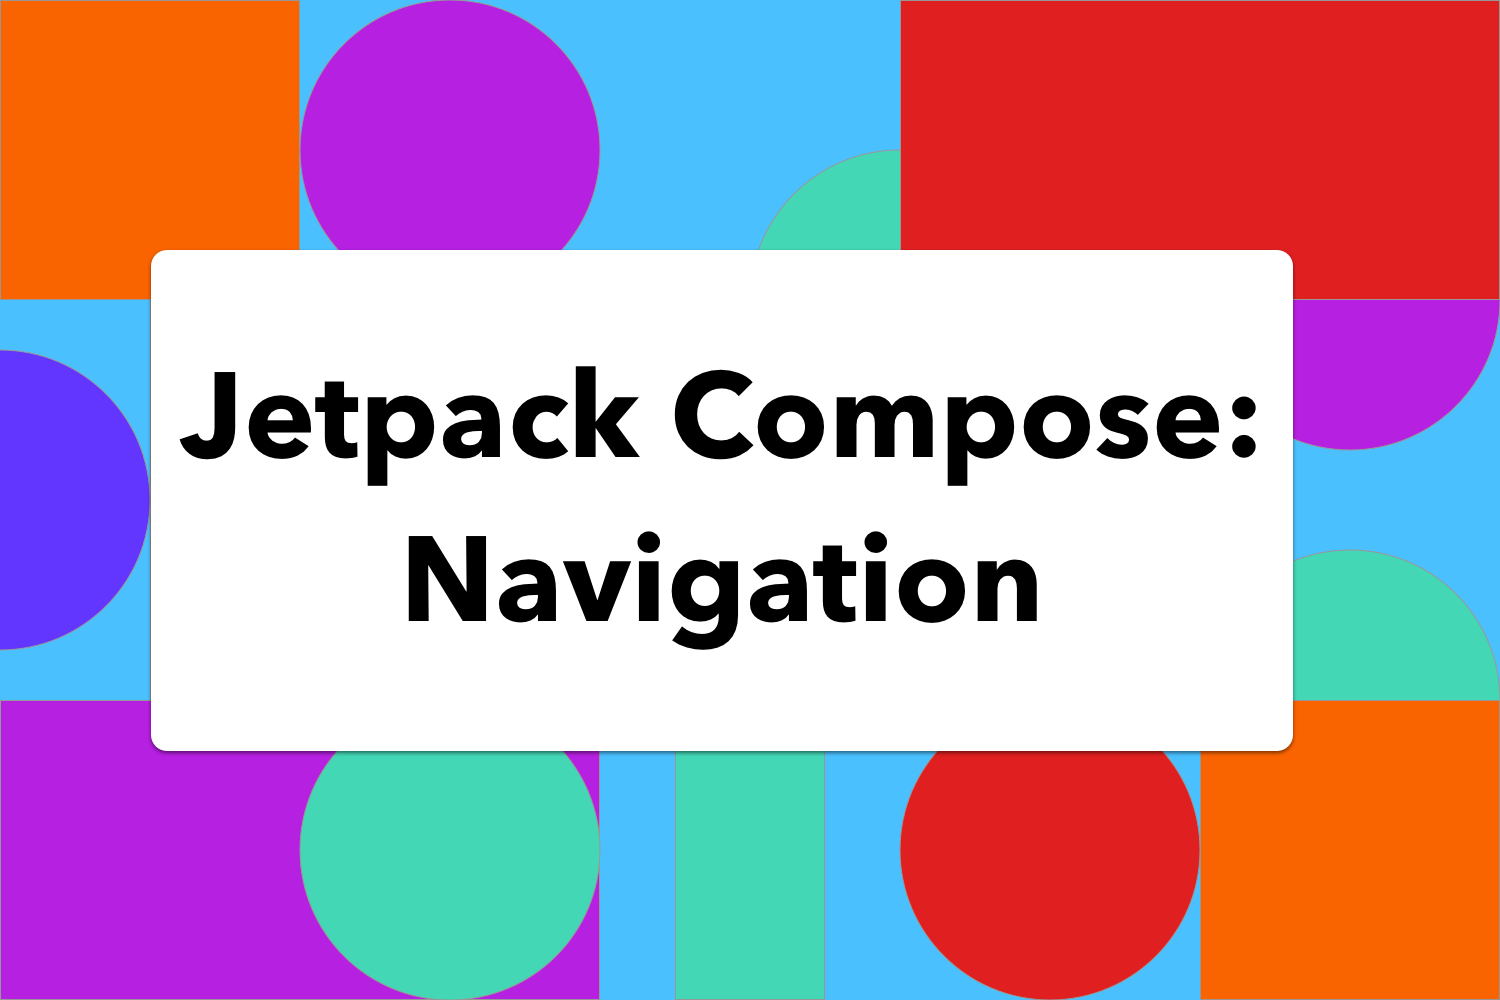 Jetpack Compose: Navigation